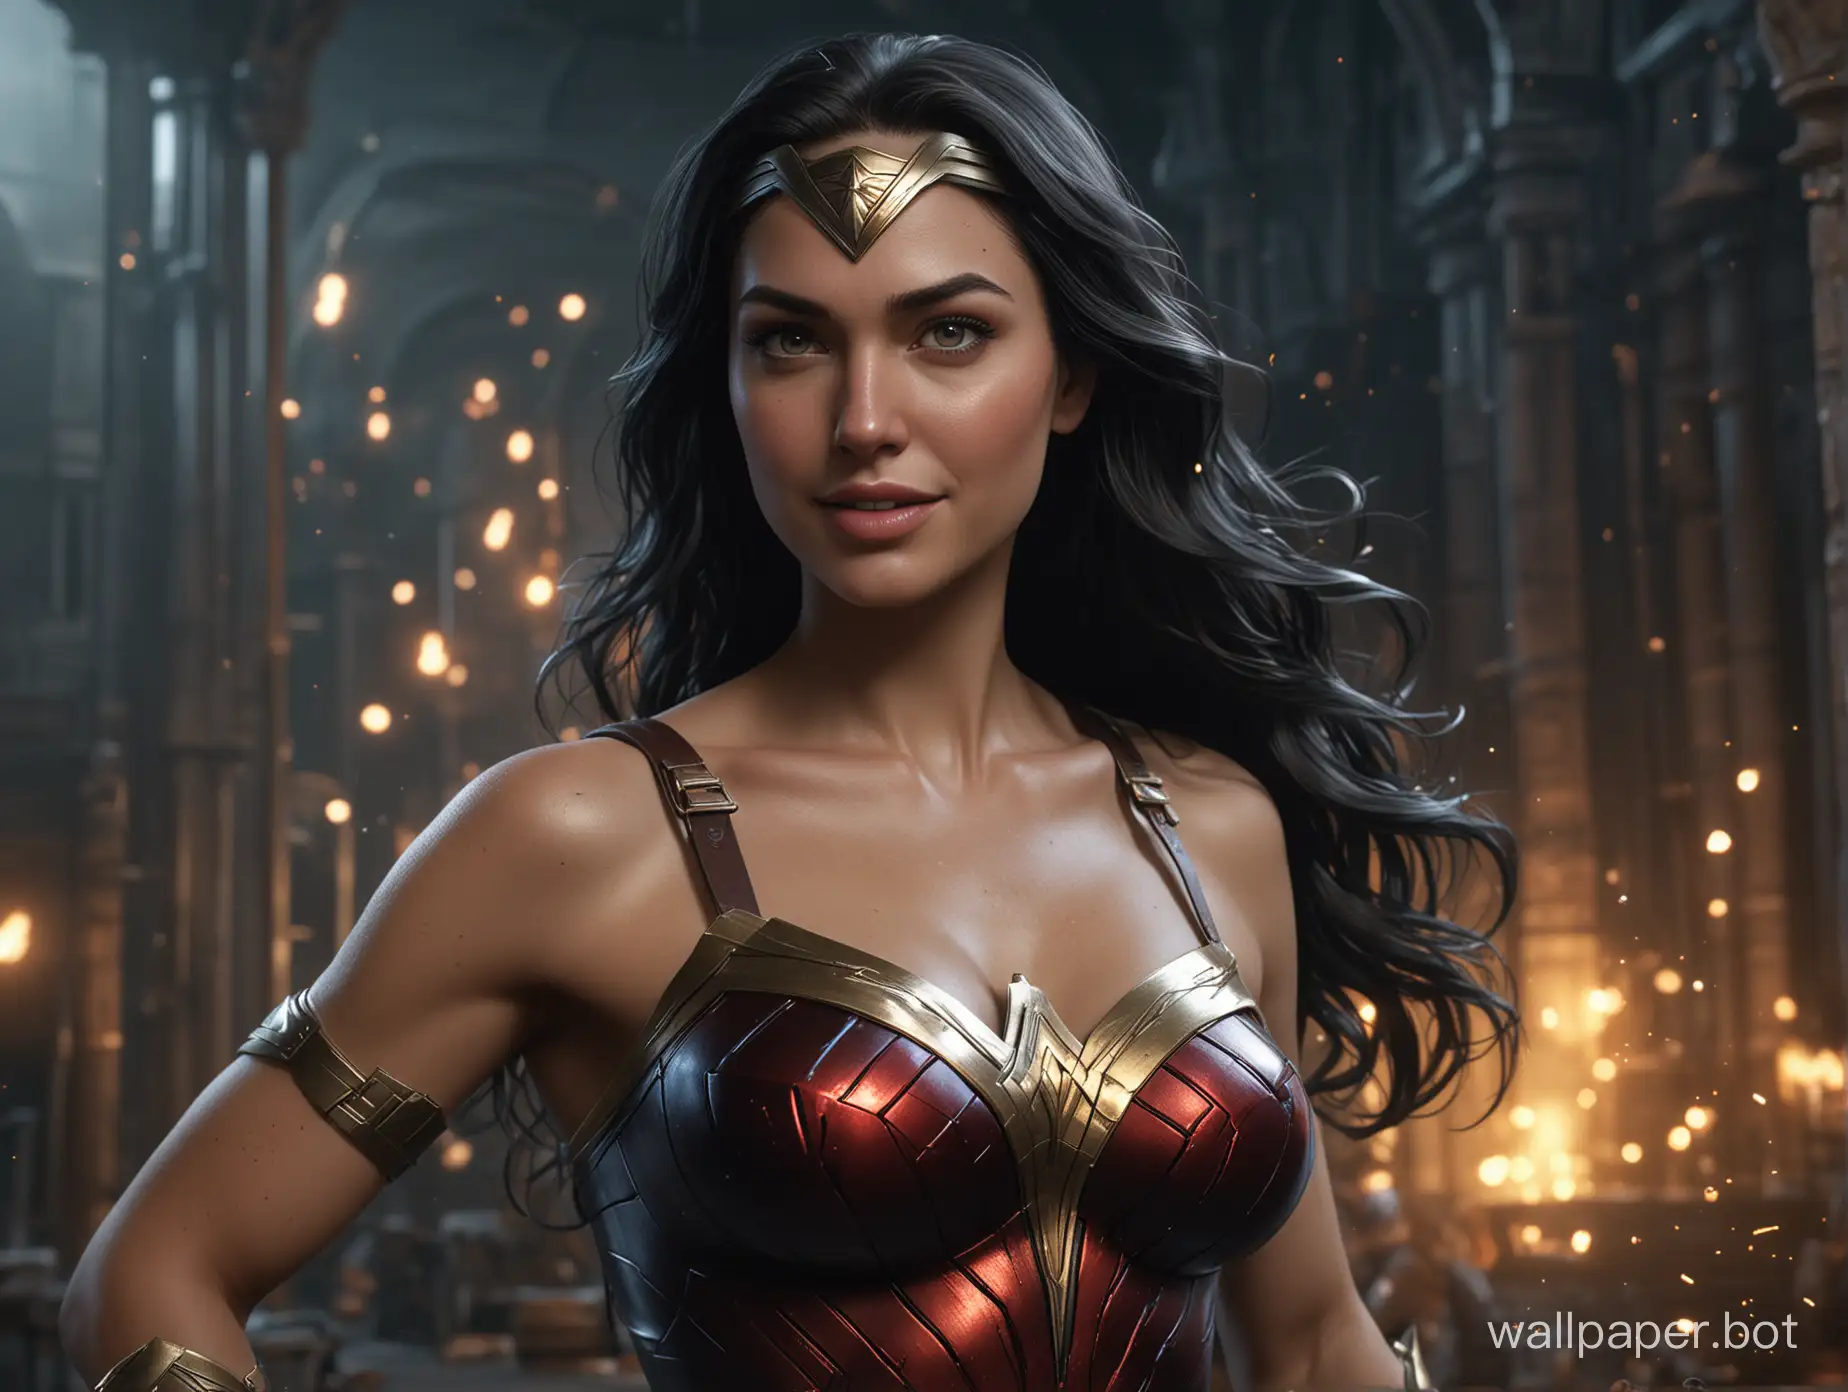 Vivid-Amazon-Warrior-Wonder-Woman-Smiling-in-Superhero-Pose